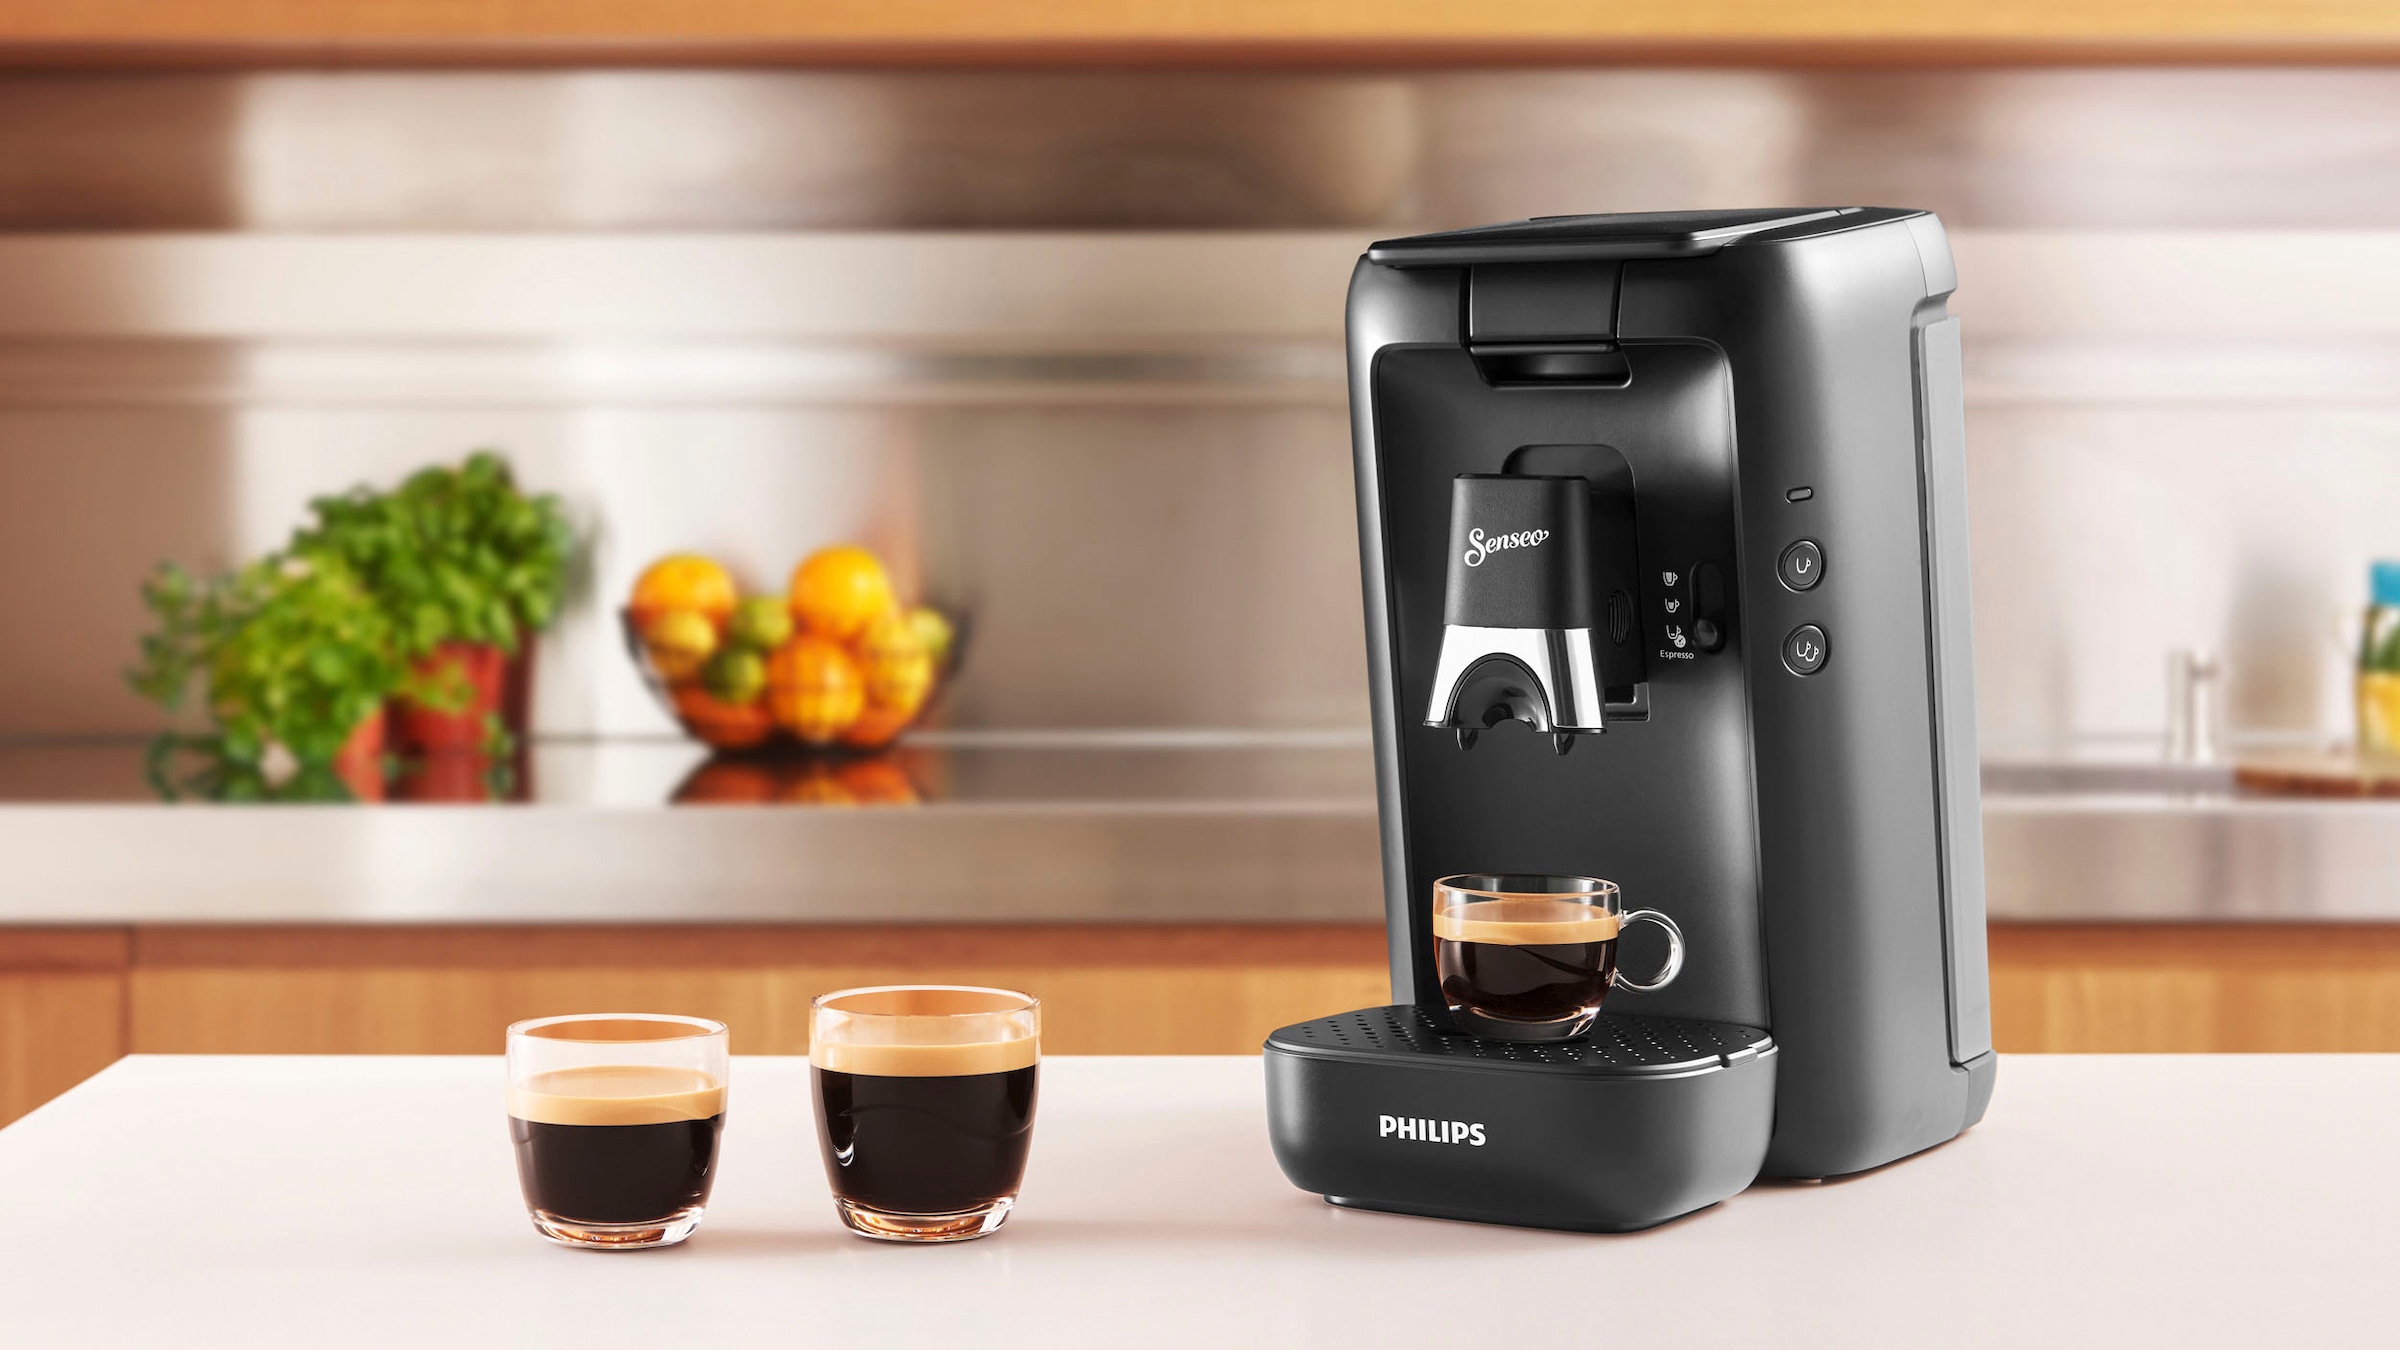 Kaffeepadmaschine »Maestro Raten Wert | 14,- auf von inkl. Philips BAUR € Gratis-Zugaben im CSA260/60«, UVP Senseo